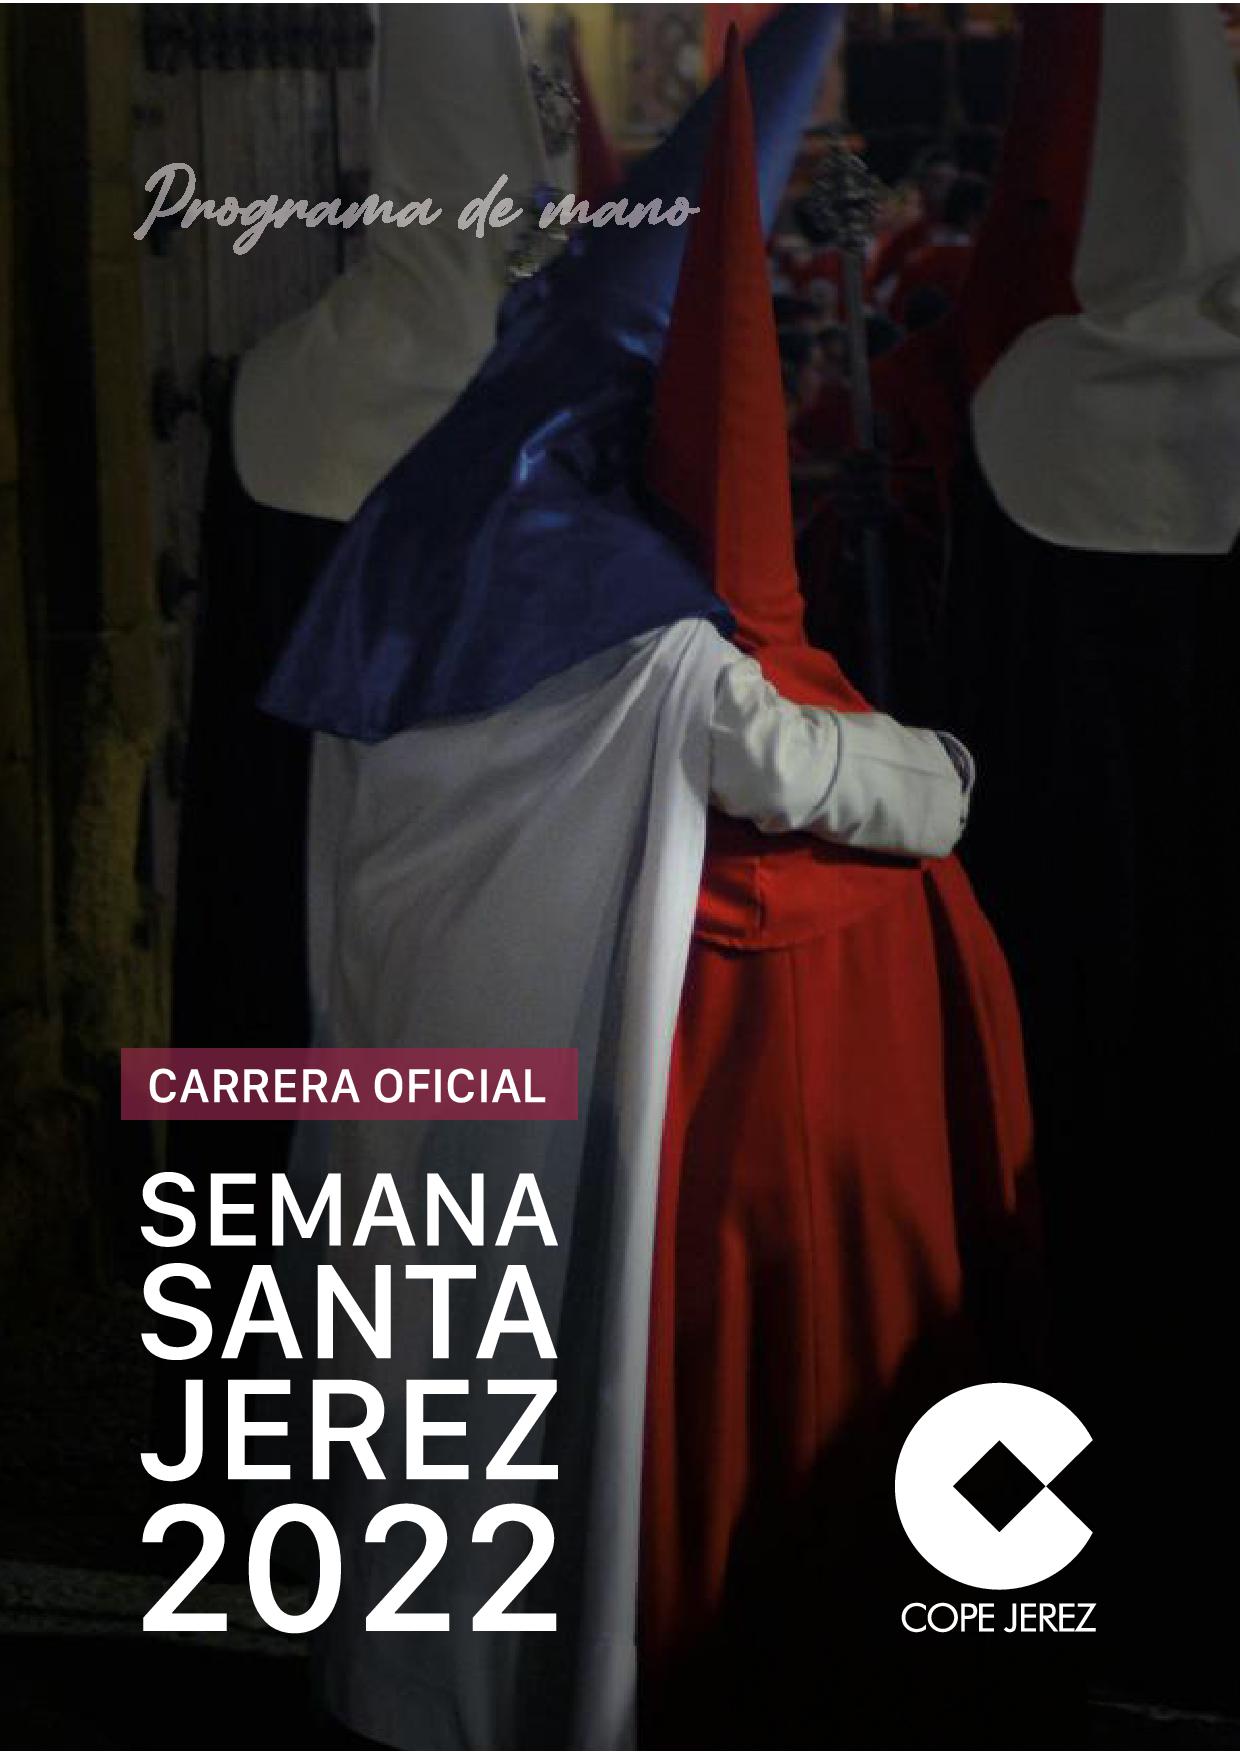 Programa de Mano "Carrera Oficial". Semana Santa Jerez de la Frontera (Cádiz) 2022